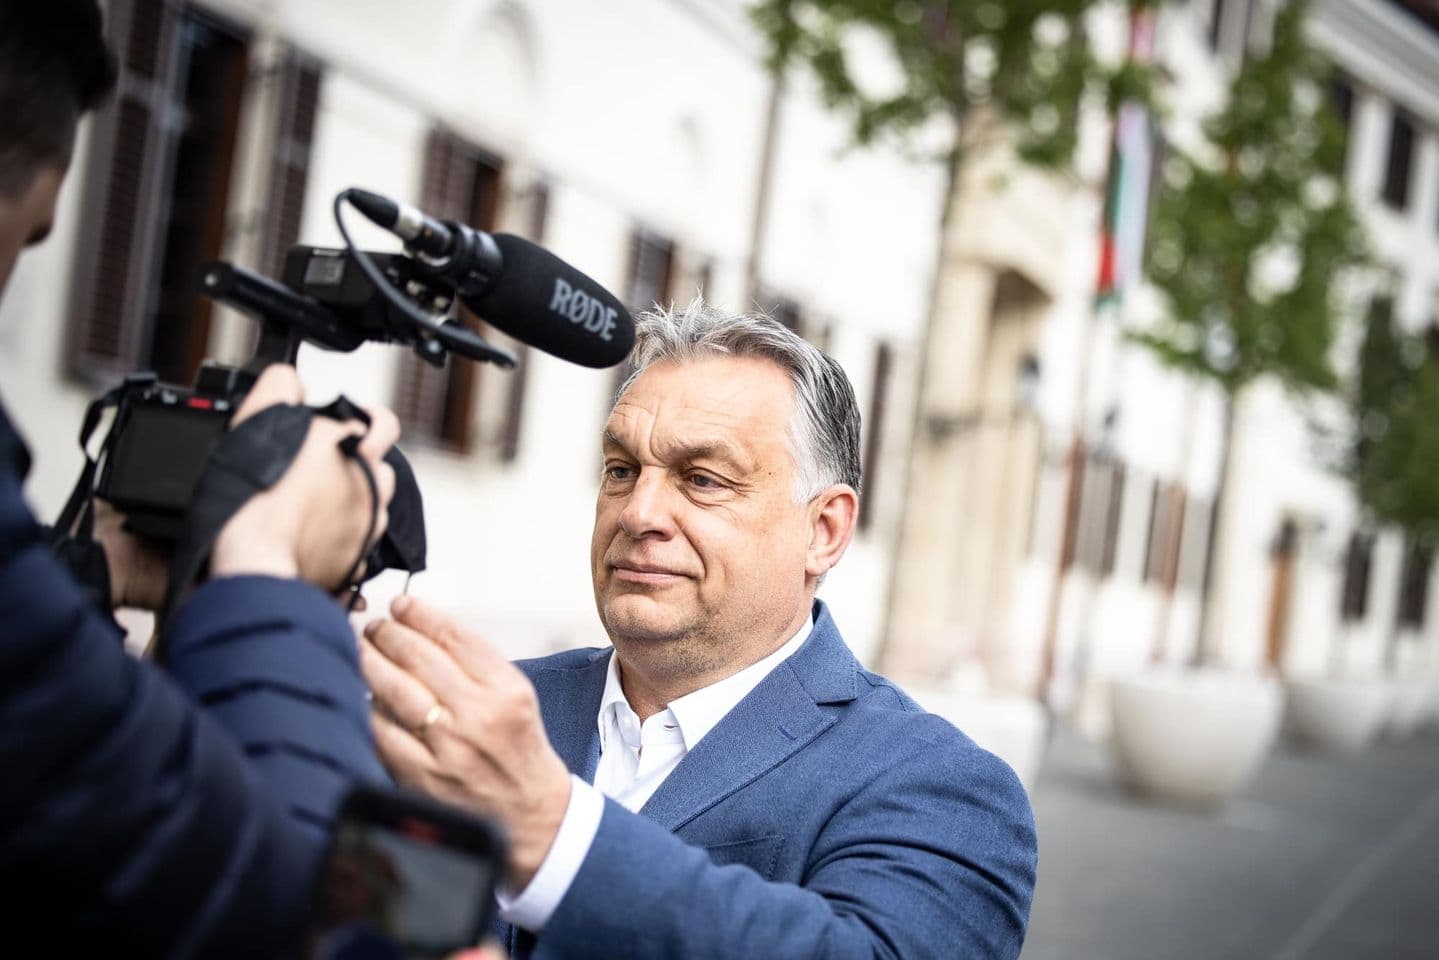 Kedves Maszk, goodbye! Orbán jelezte, nem kell többé maszkot viselni az utcán